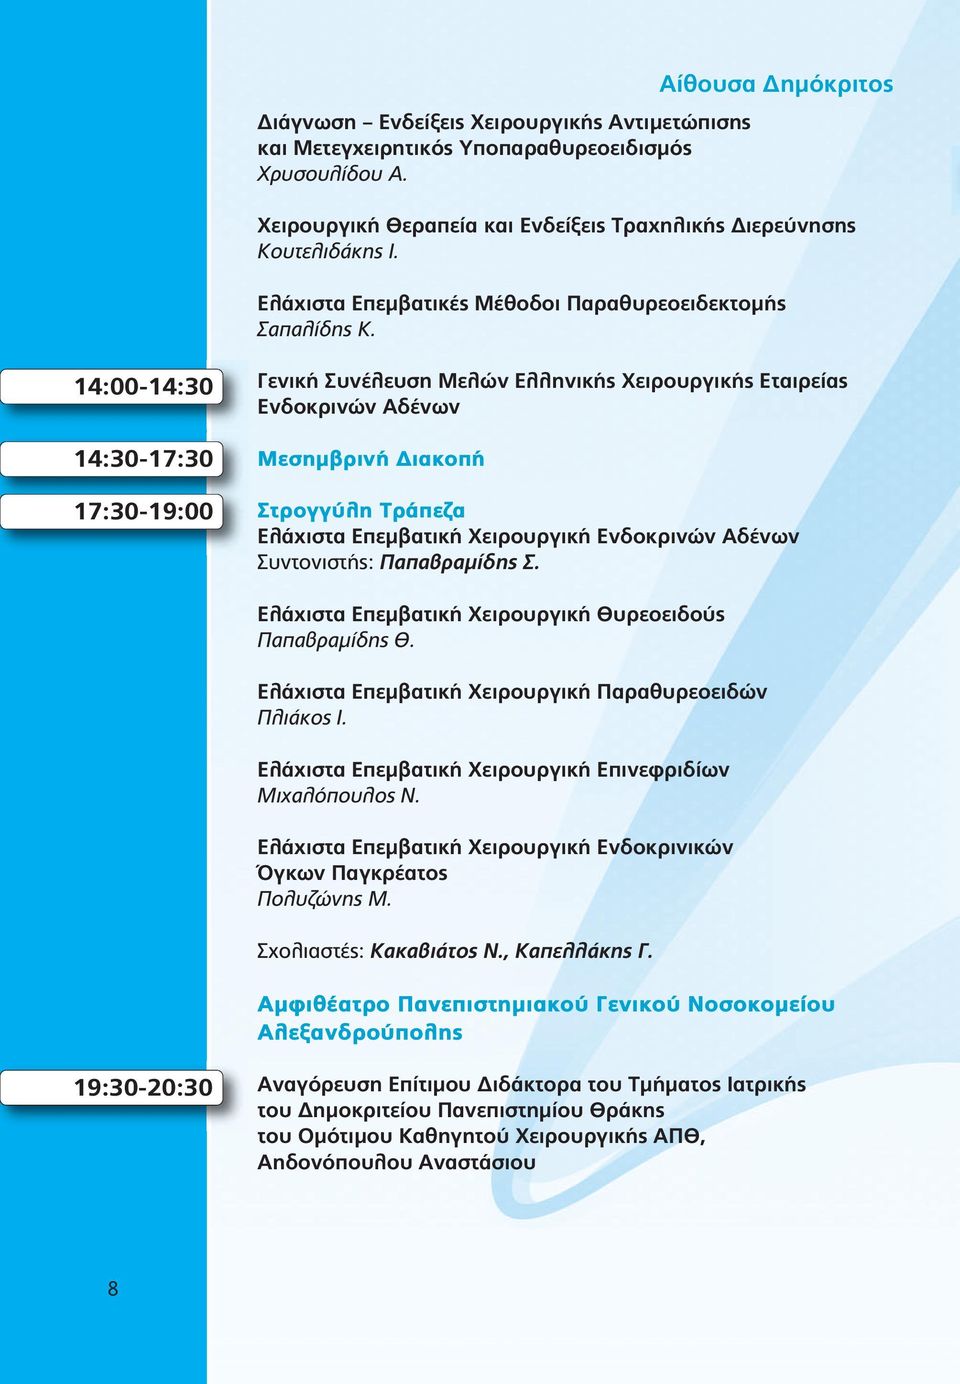 14:00-14:30 14:30-17:30 17:30-19:00 Γενική Συνέλευση Μελών Ελληνικής Χειρουργικής Εταιρείας Ενδοκρινών Αδένων Μεσημβρινή Διακοπή Στρογγύλη Τράπεζα Ελάχιστα Επεμβατική Χειρουργική Ενδοκρινών Αδένων